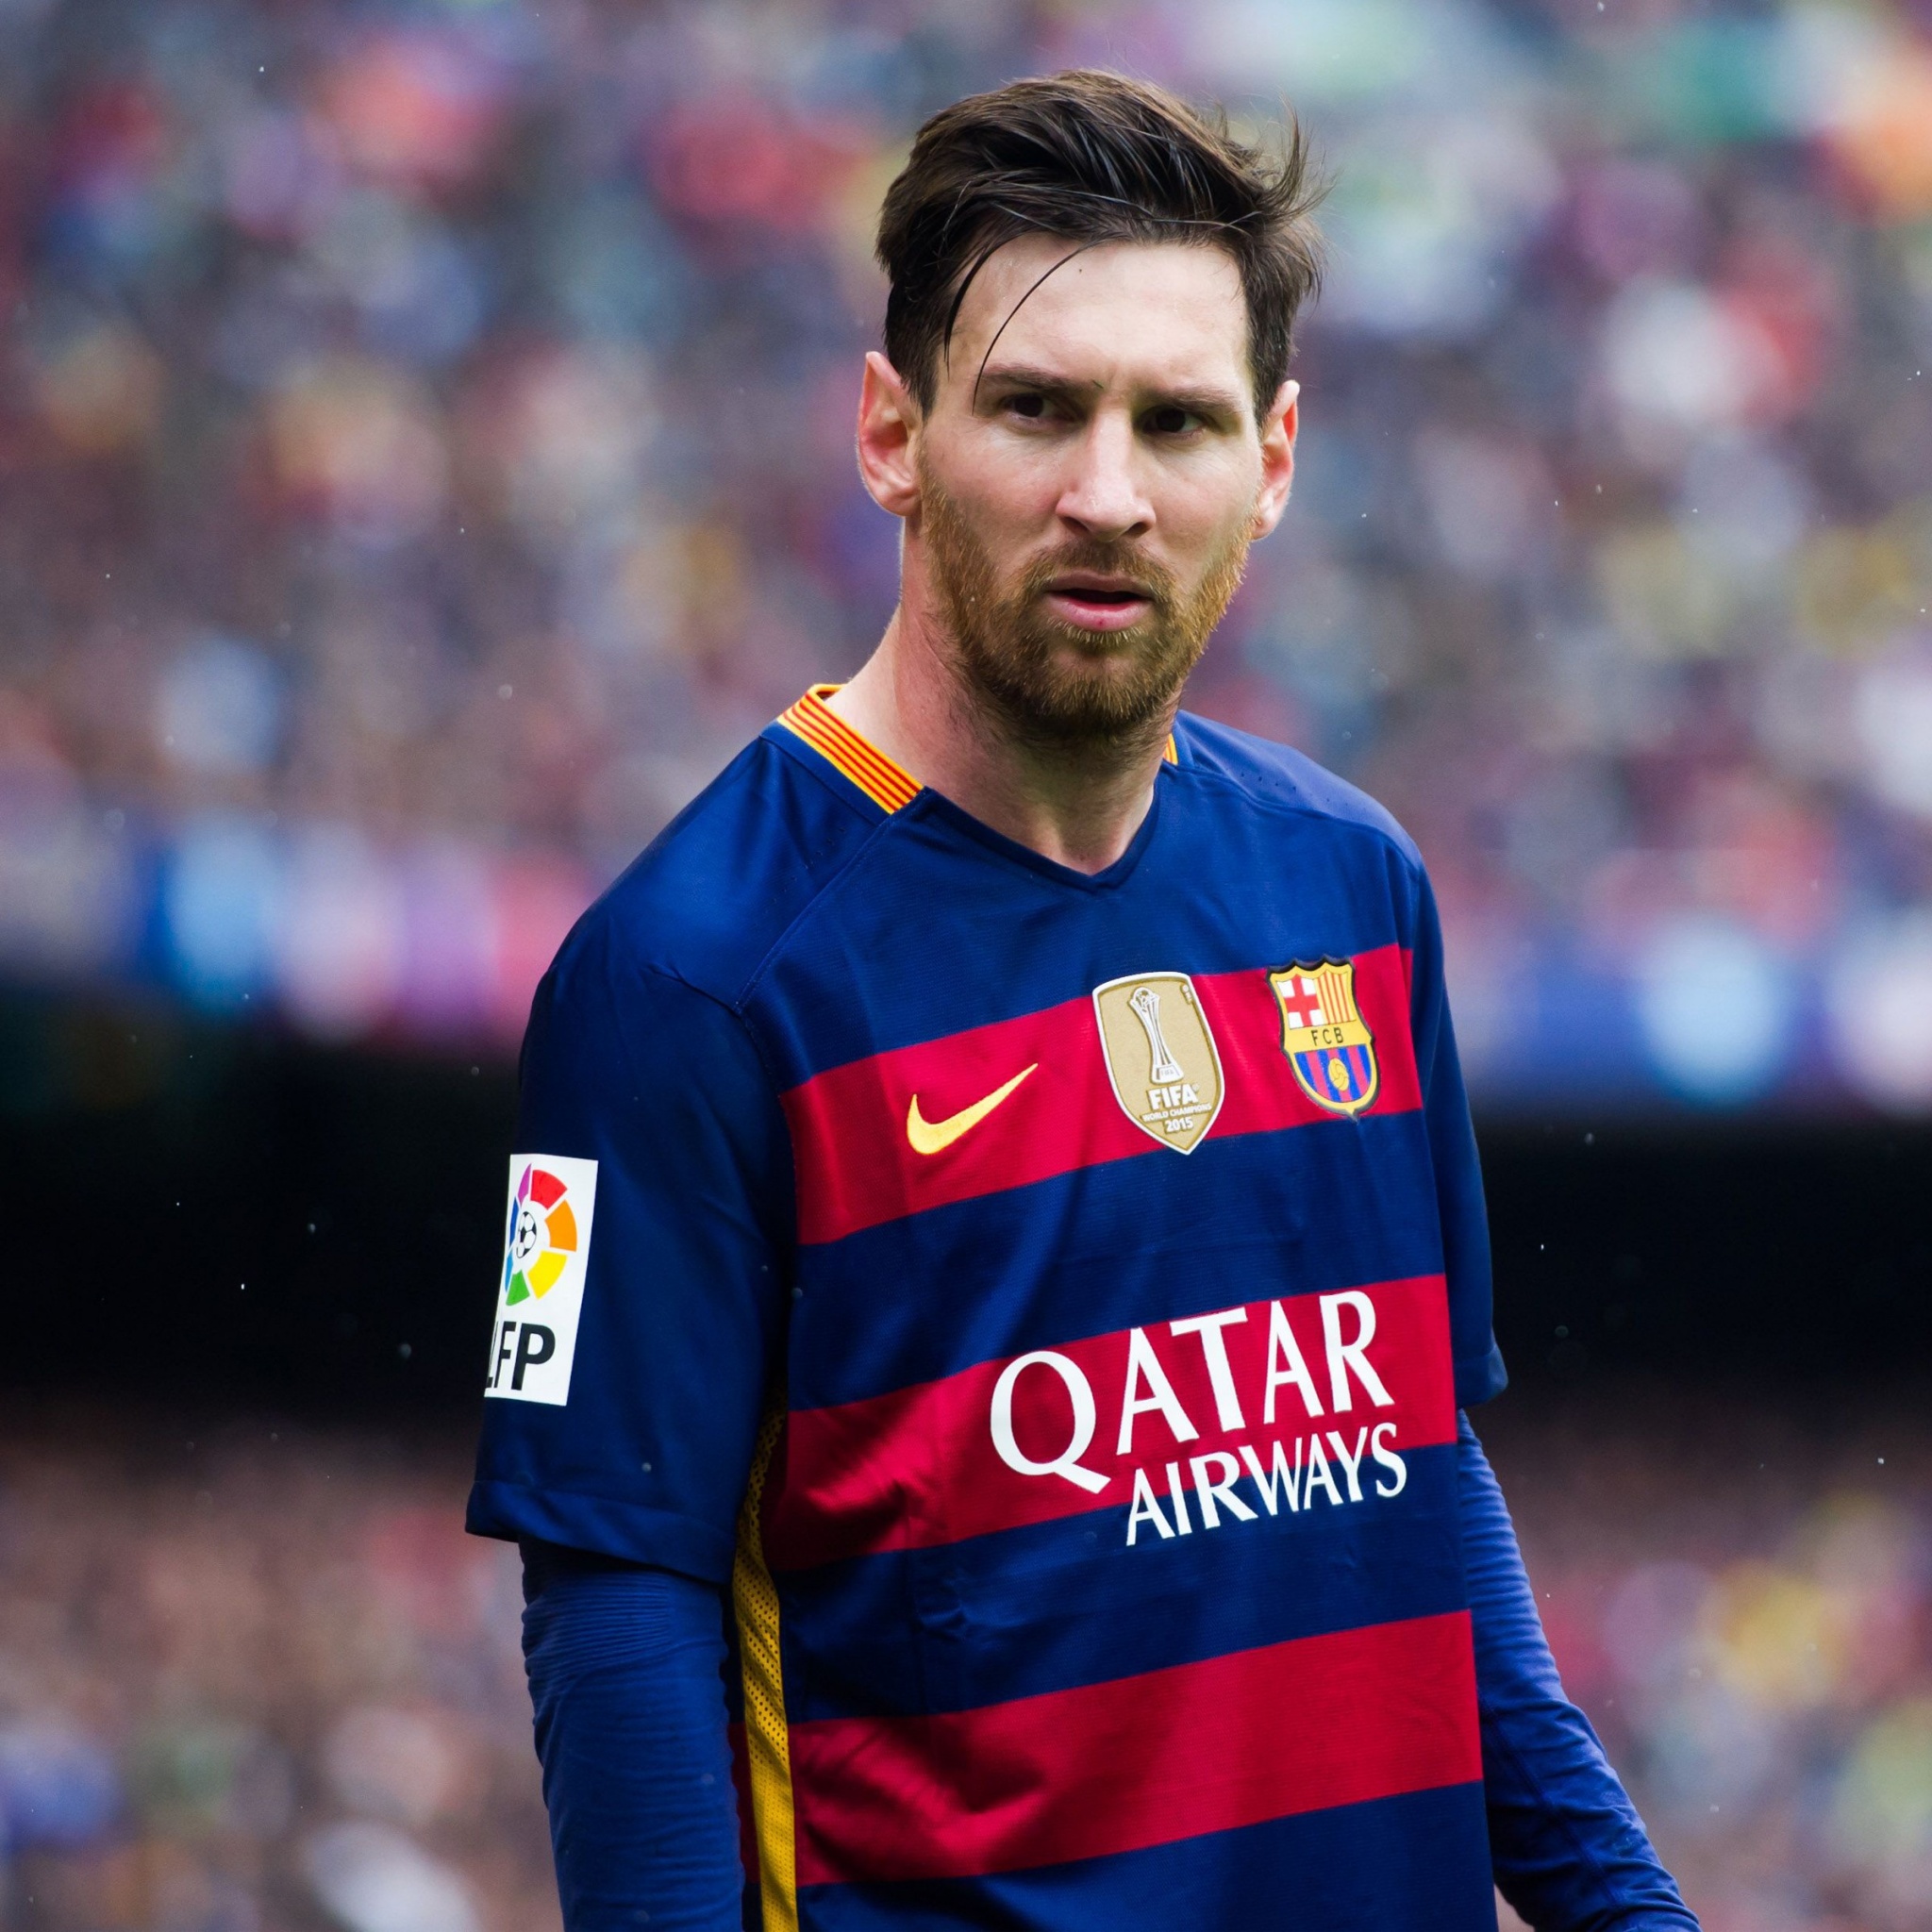 Nếu bạn đam mê về thể thao và đặc biệt là Lionel Messi, hãy đến xem những hình nền về ngôi sao này với phong cách thể thao đầy sức hút. Không chỉ là hình ảnh, mà còn là cảm giác hưng phấn về thể thao!